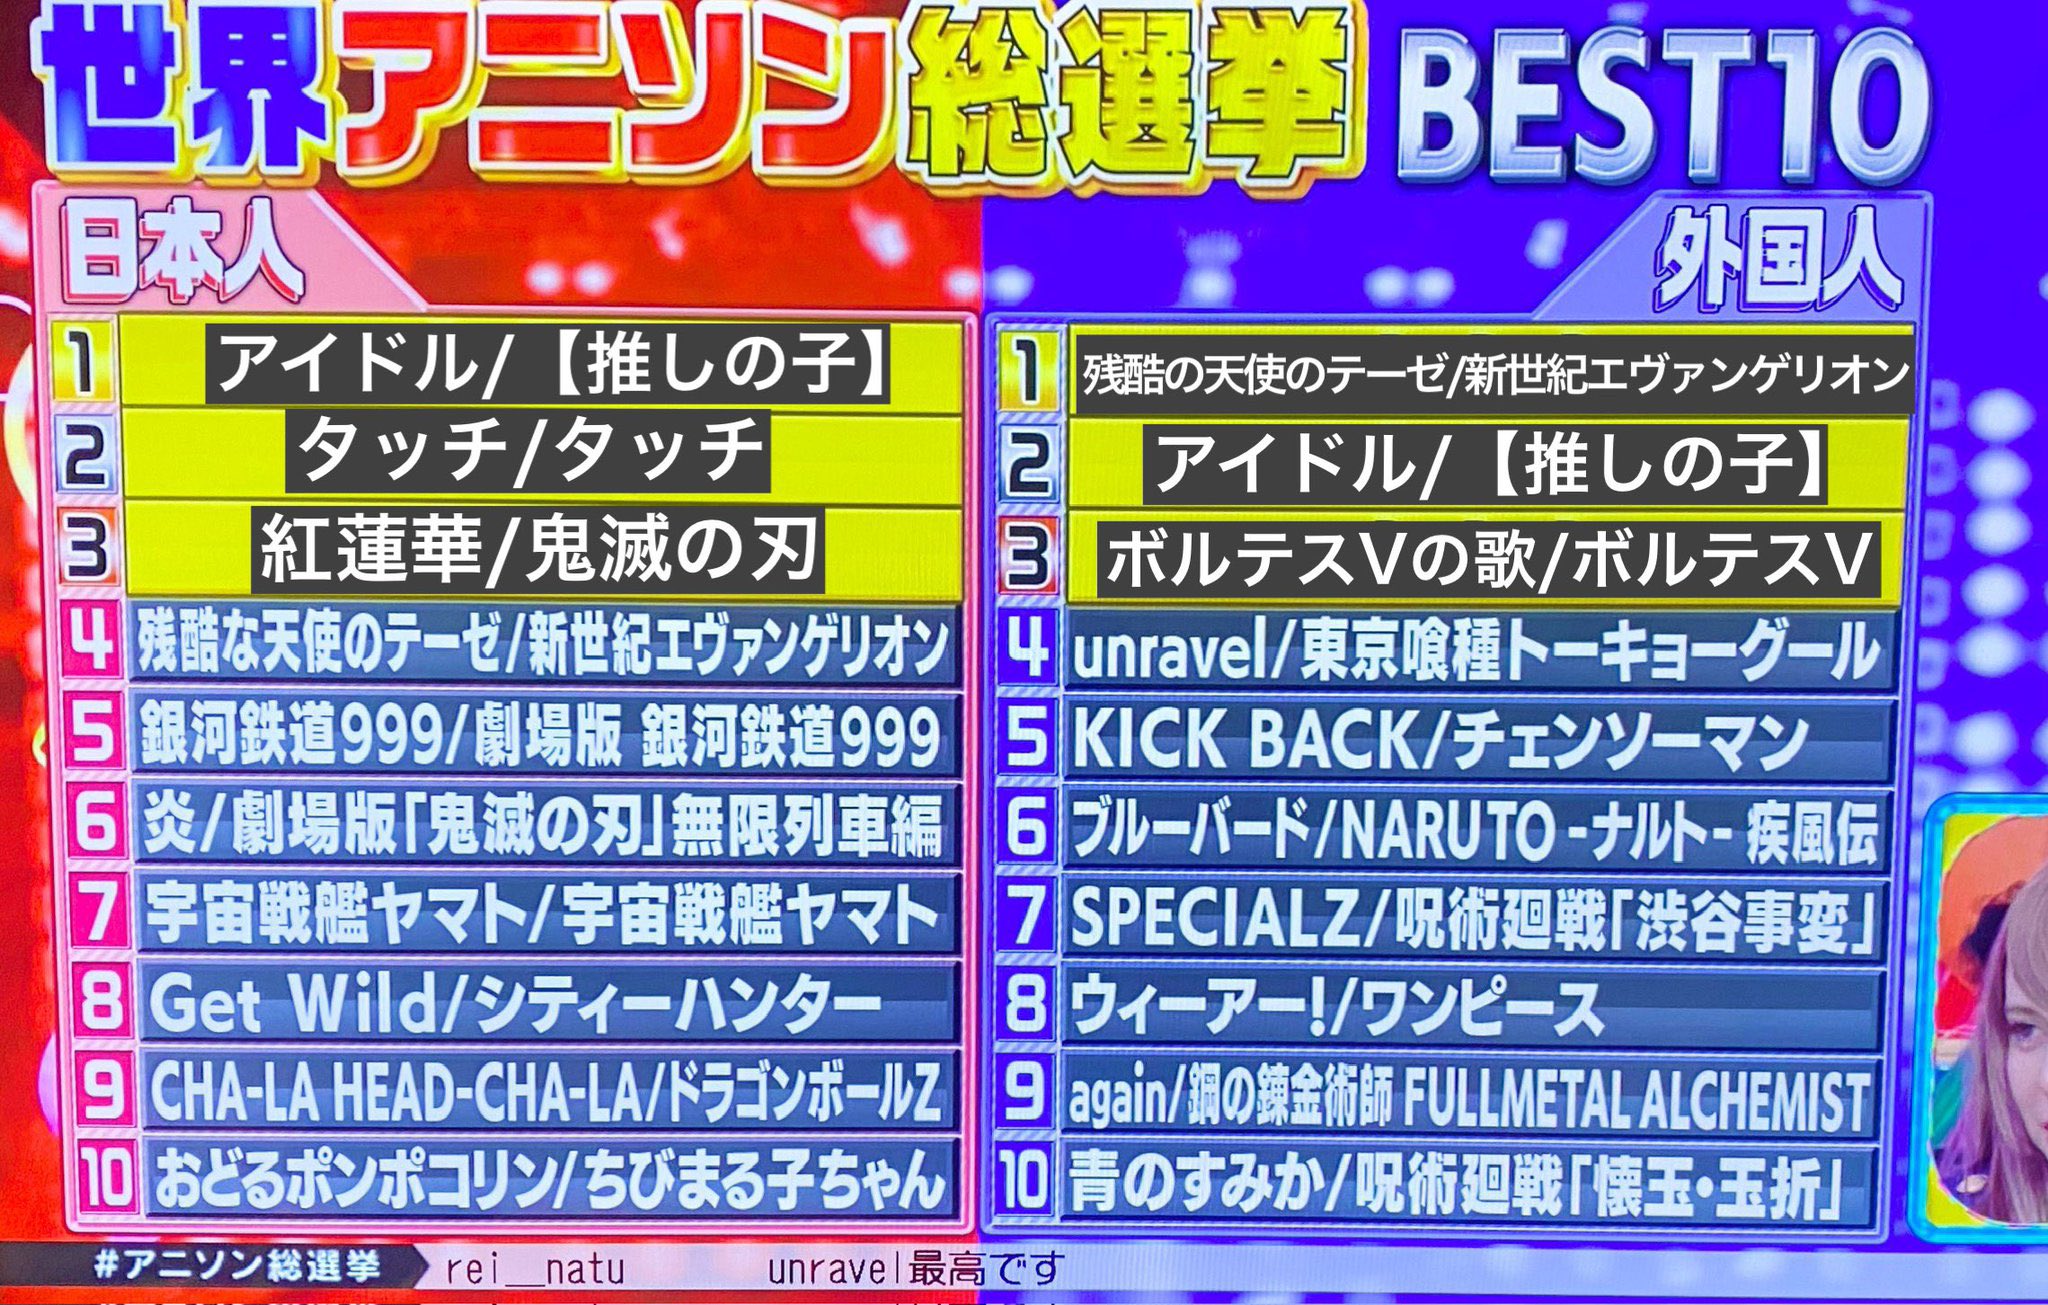 日本朝日电视台票选动漫歌曲排行 外国人最爱《残酷天使的行动纲领》  第2张